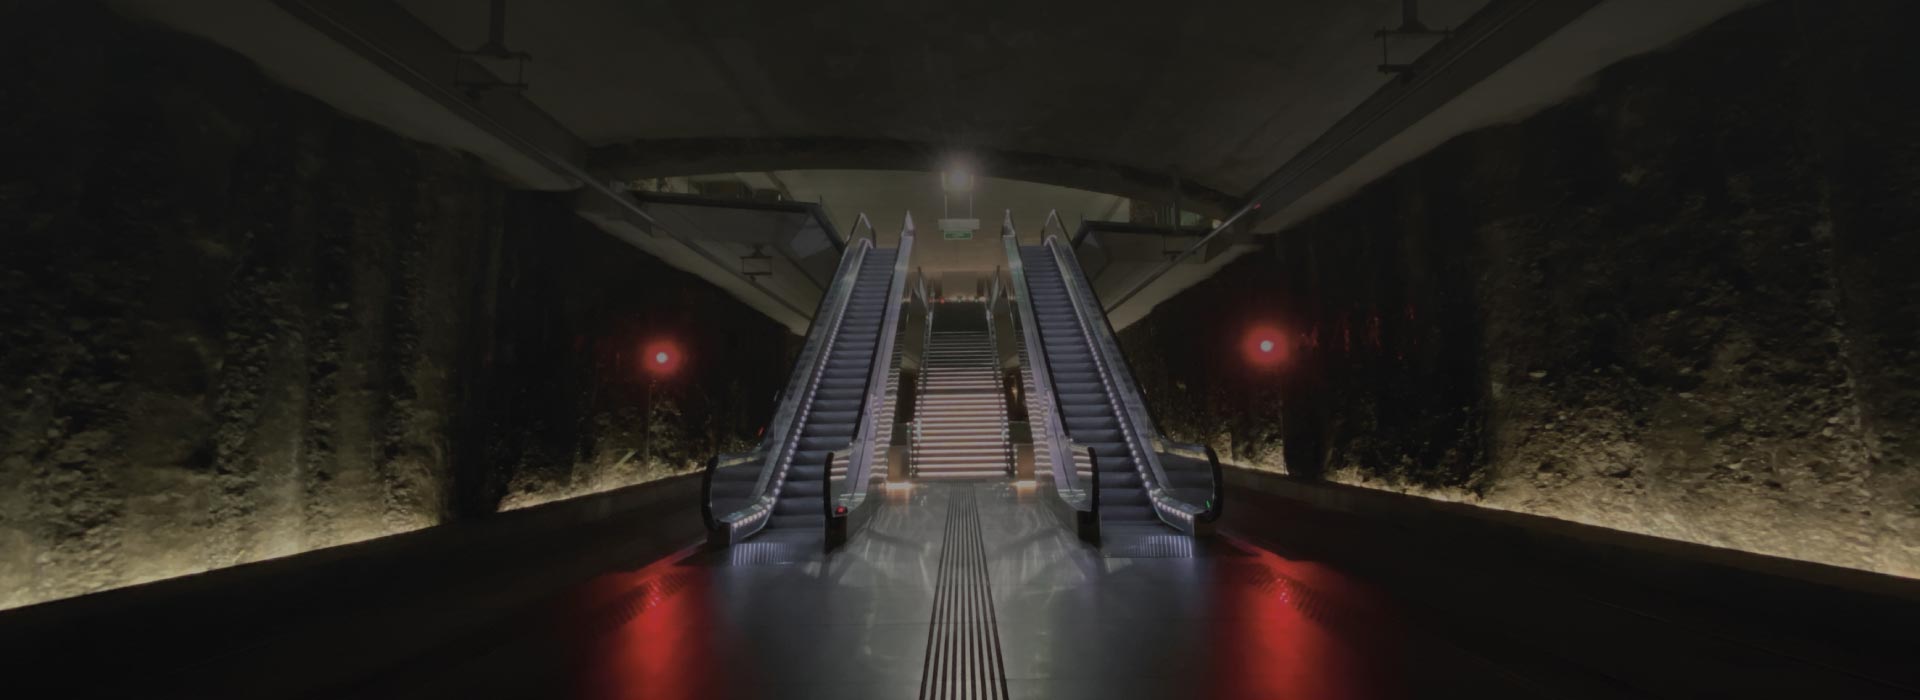 Fotografía de estación de metro granada